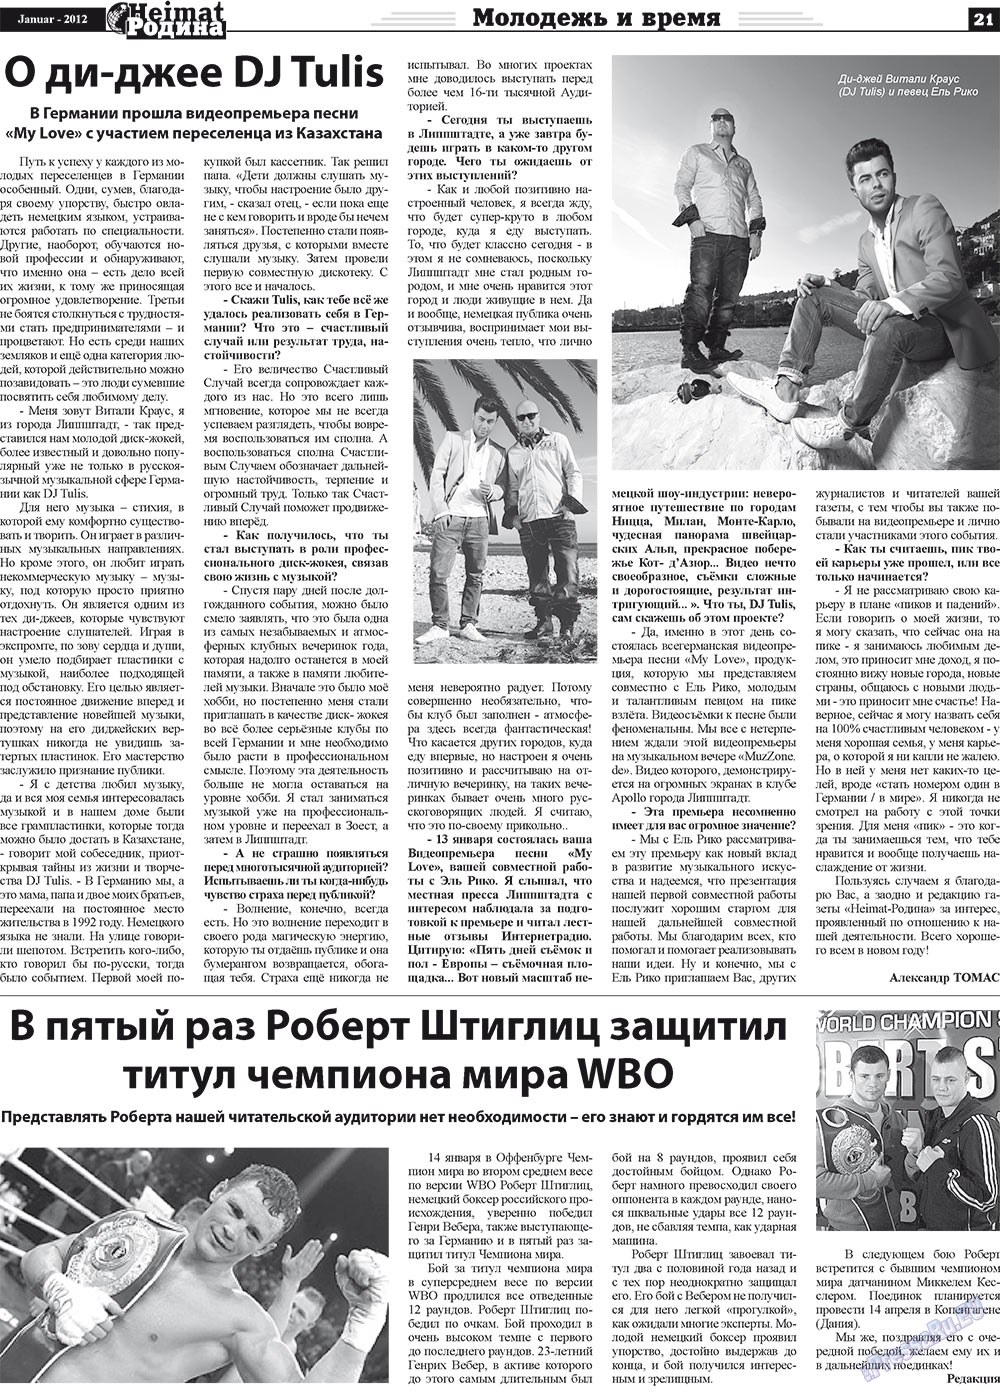 Heimat-Родина (газета). 2012 год, номер 1, стр. 21